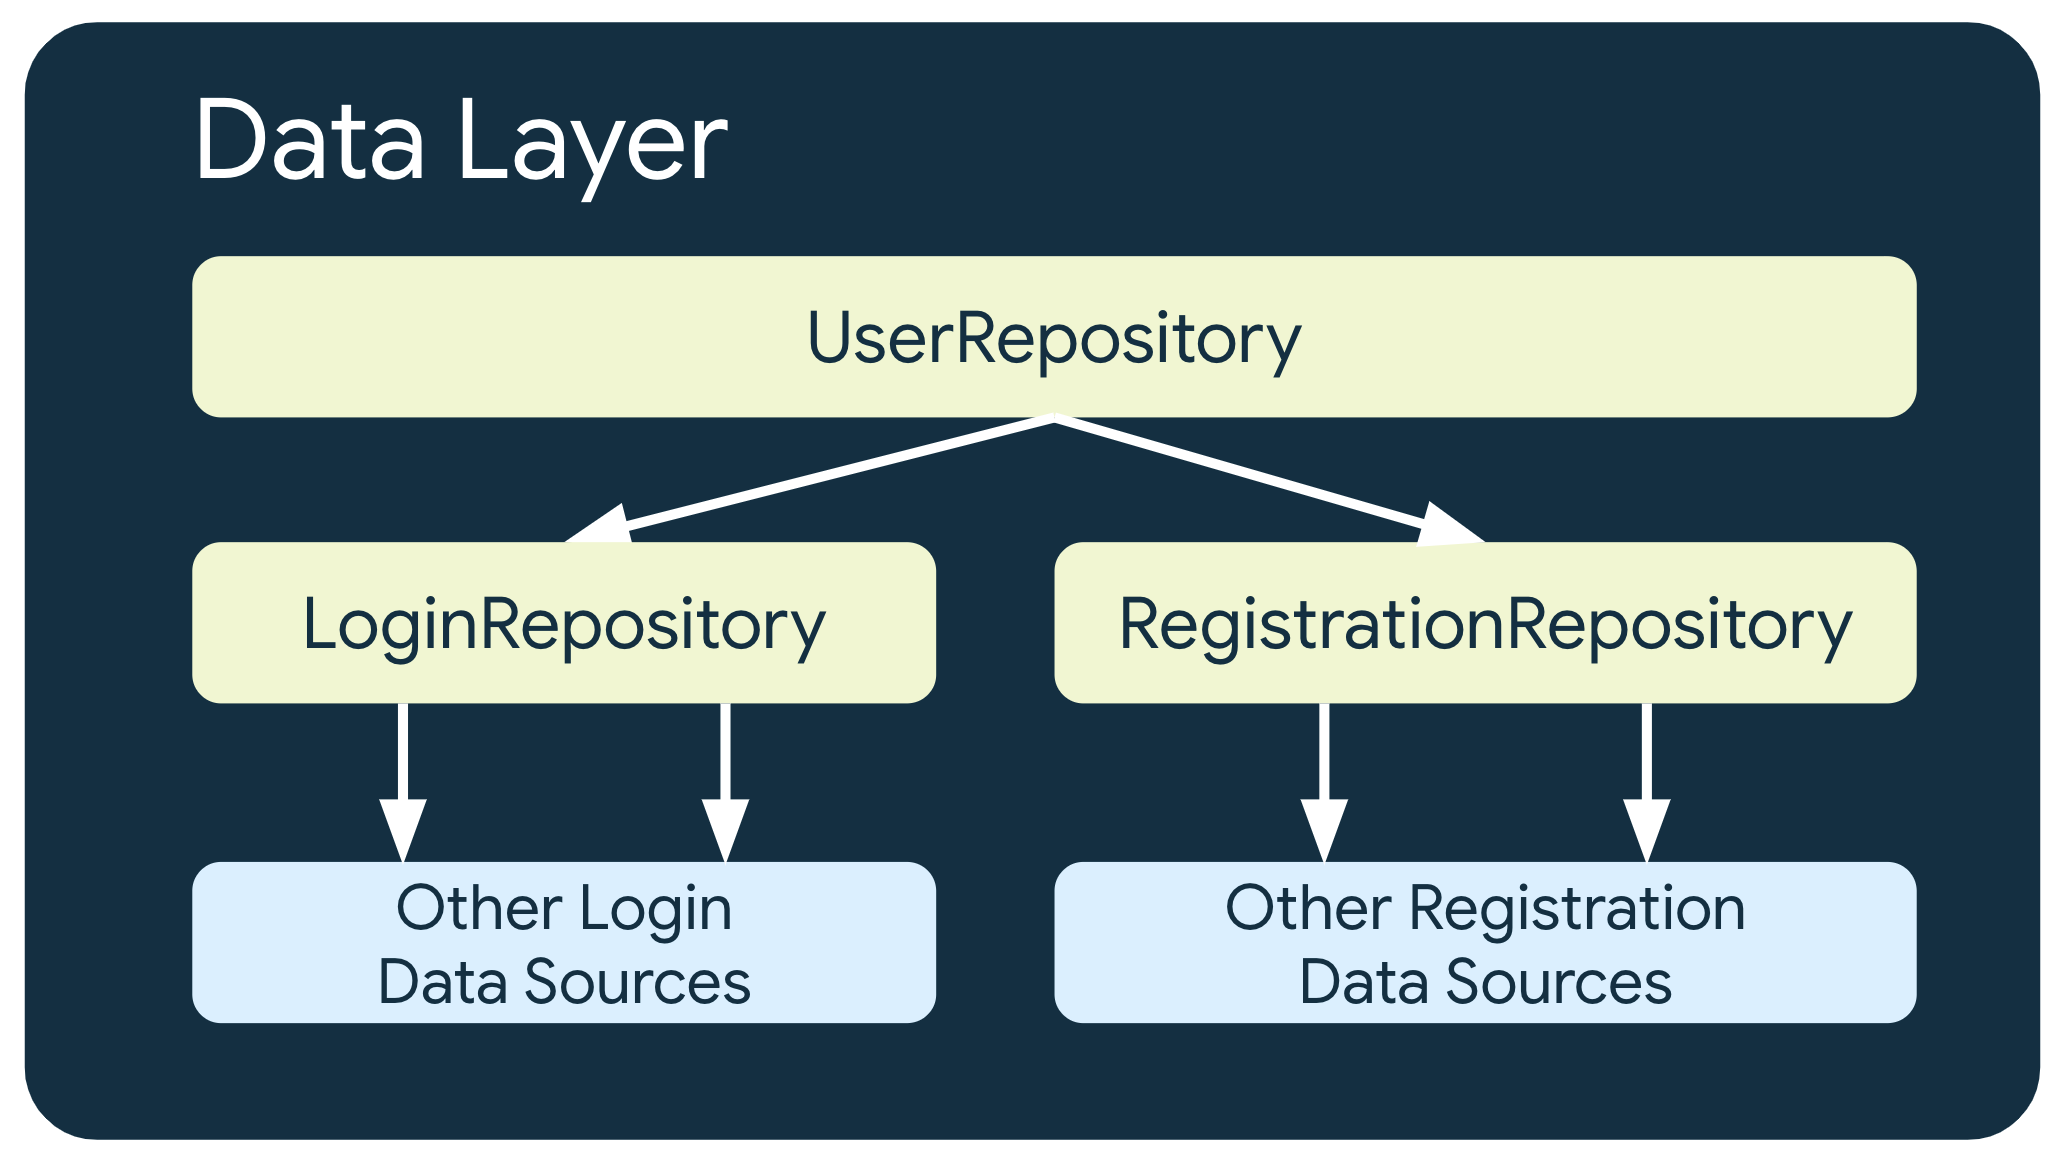 Im Beispiel hängt UserRepository von zwei anderen Repository-Klassen ab: LoginRepository, das von anderen Datenquellen für die Anmeldung abhängt, und RegistrationRepository, das von anderen Registrierungsdatenquellen abhängt.